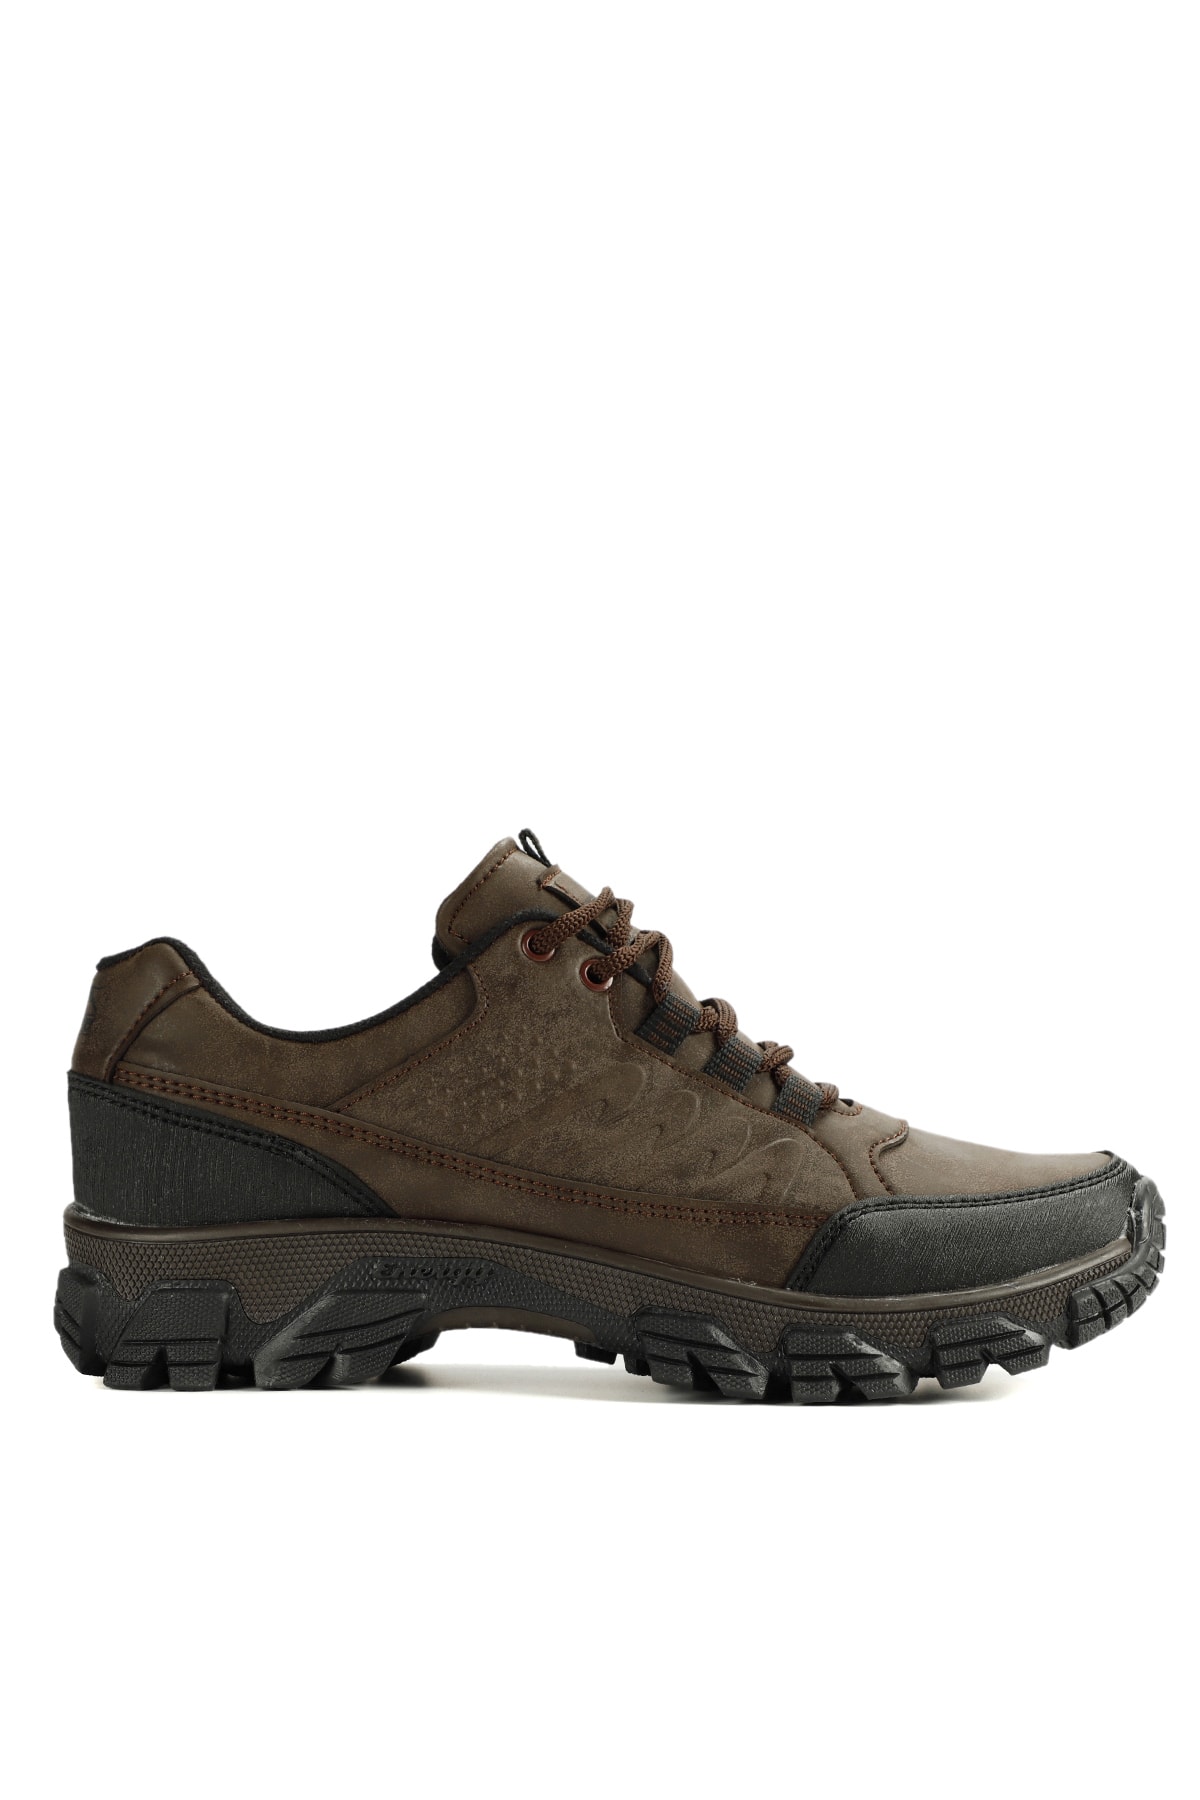 Slazenger Adark Outdoor Boots Men's Shoes Brown